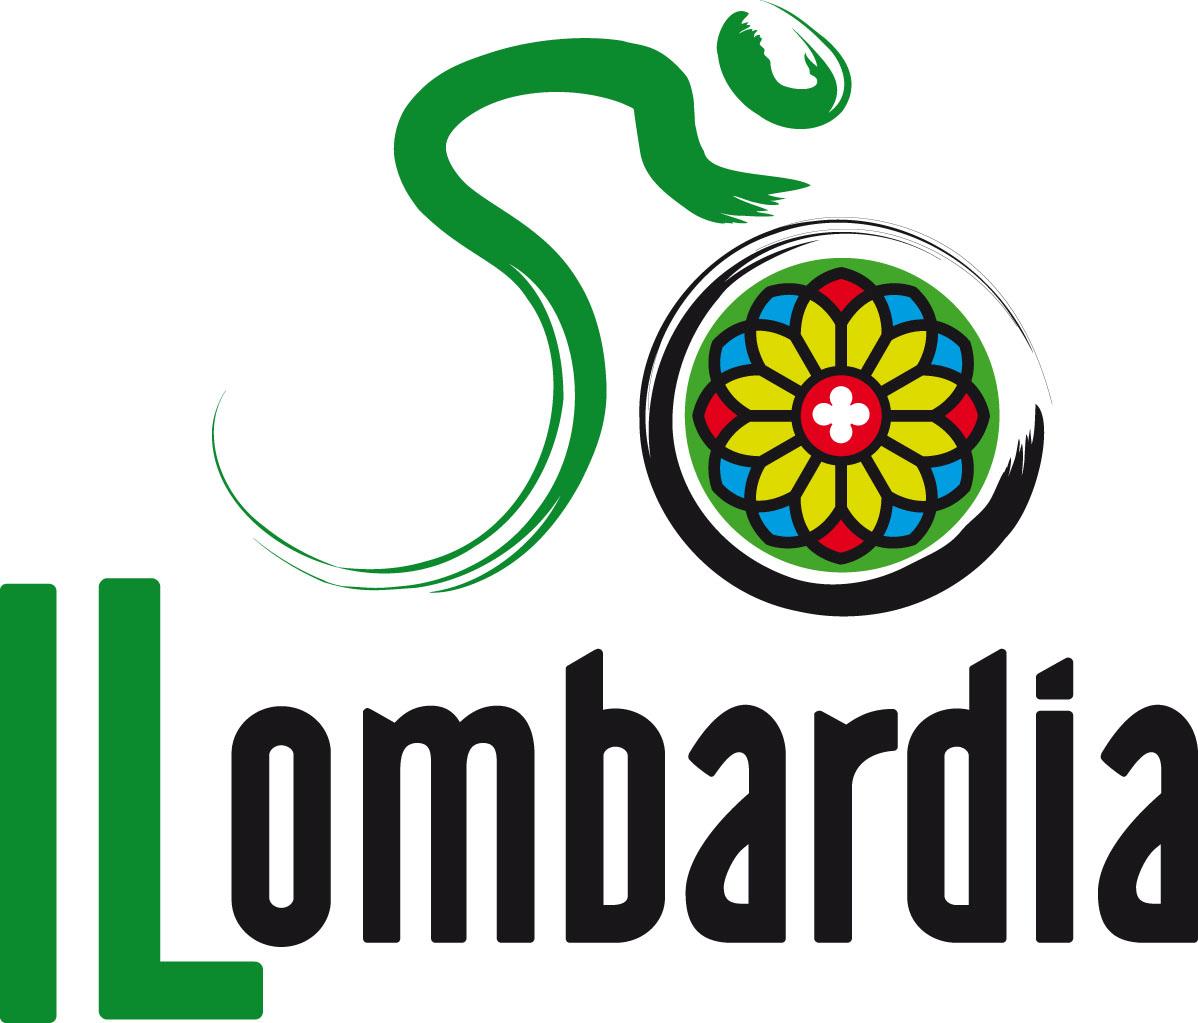 Les vainqueurs du tour de Lombardie